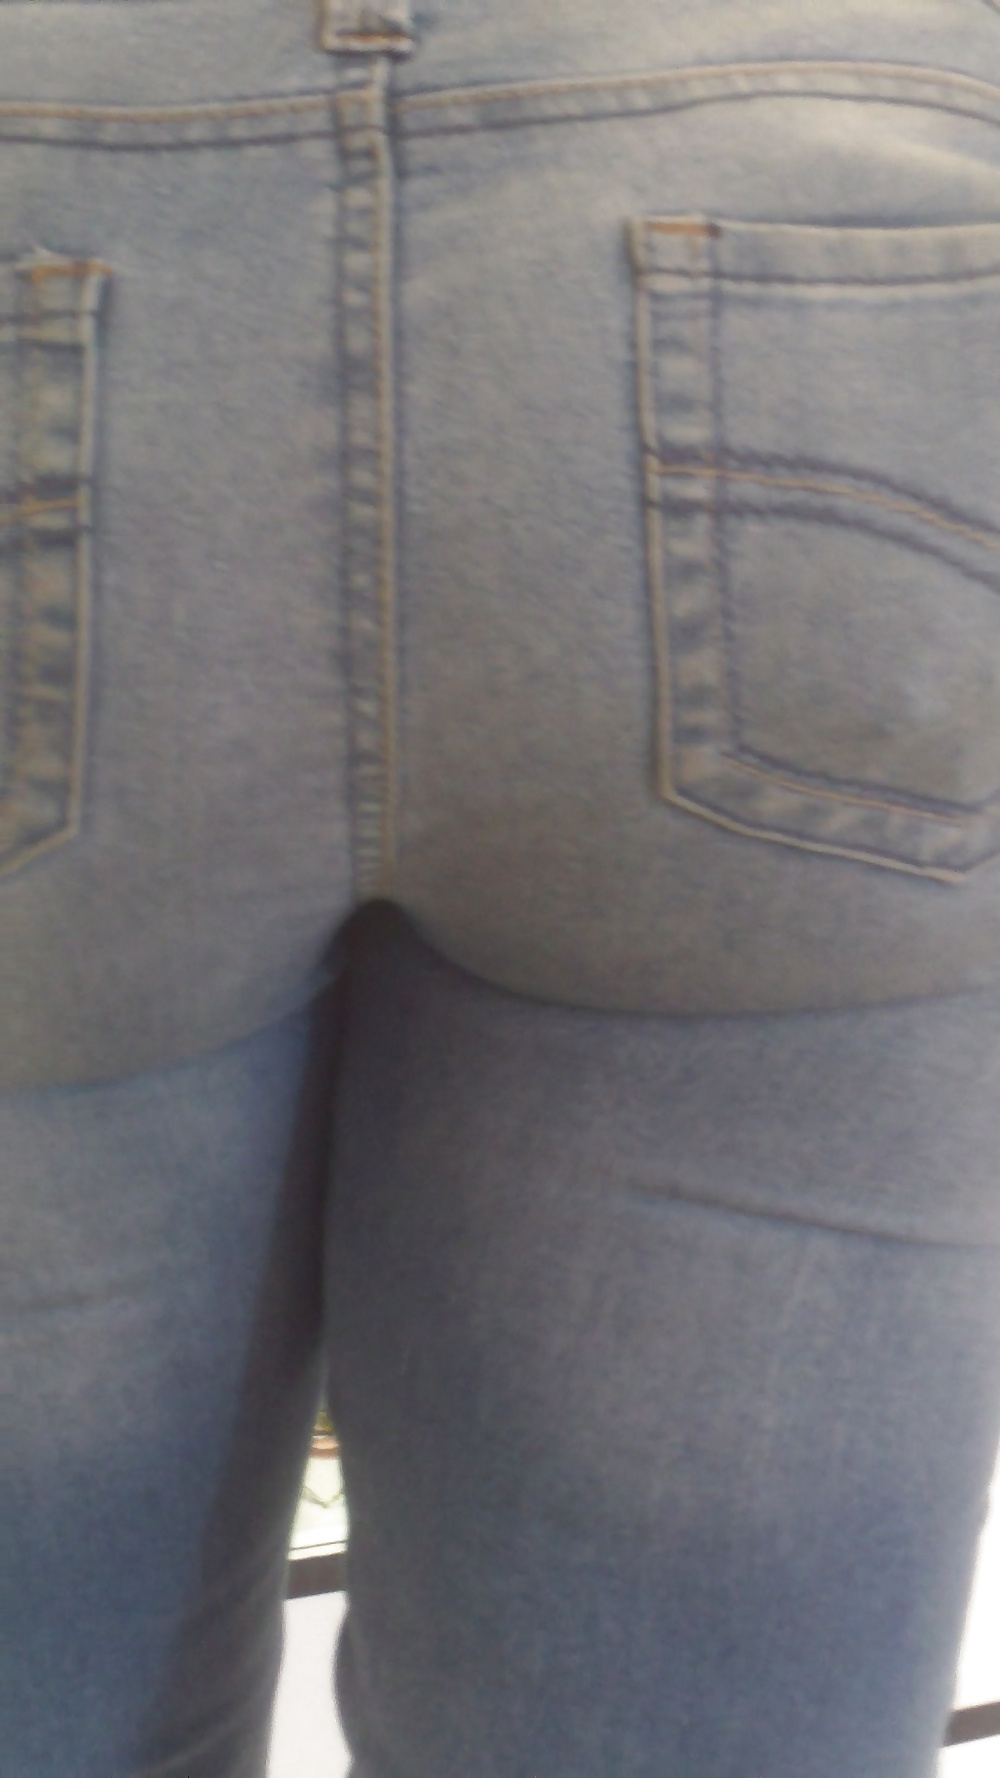 Popular teen girls butts & ass in jeans #21496487